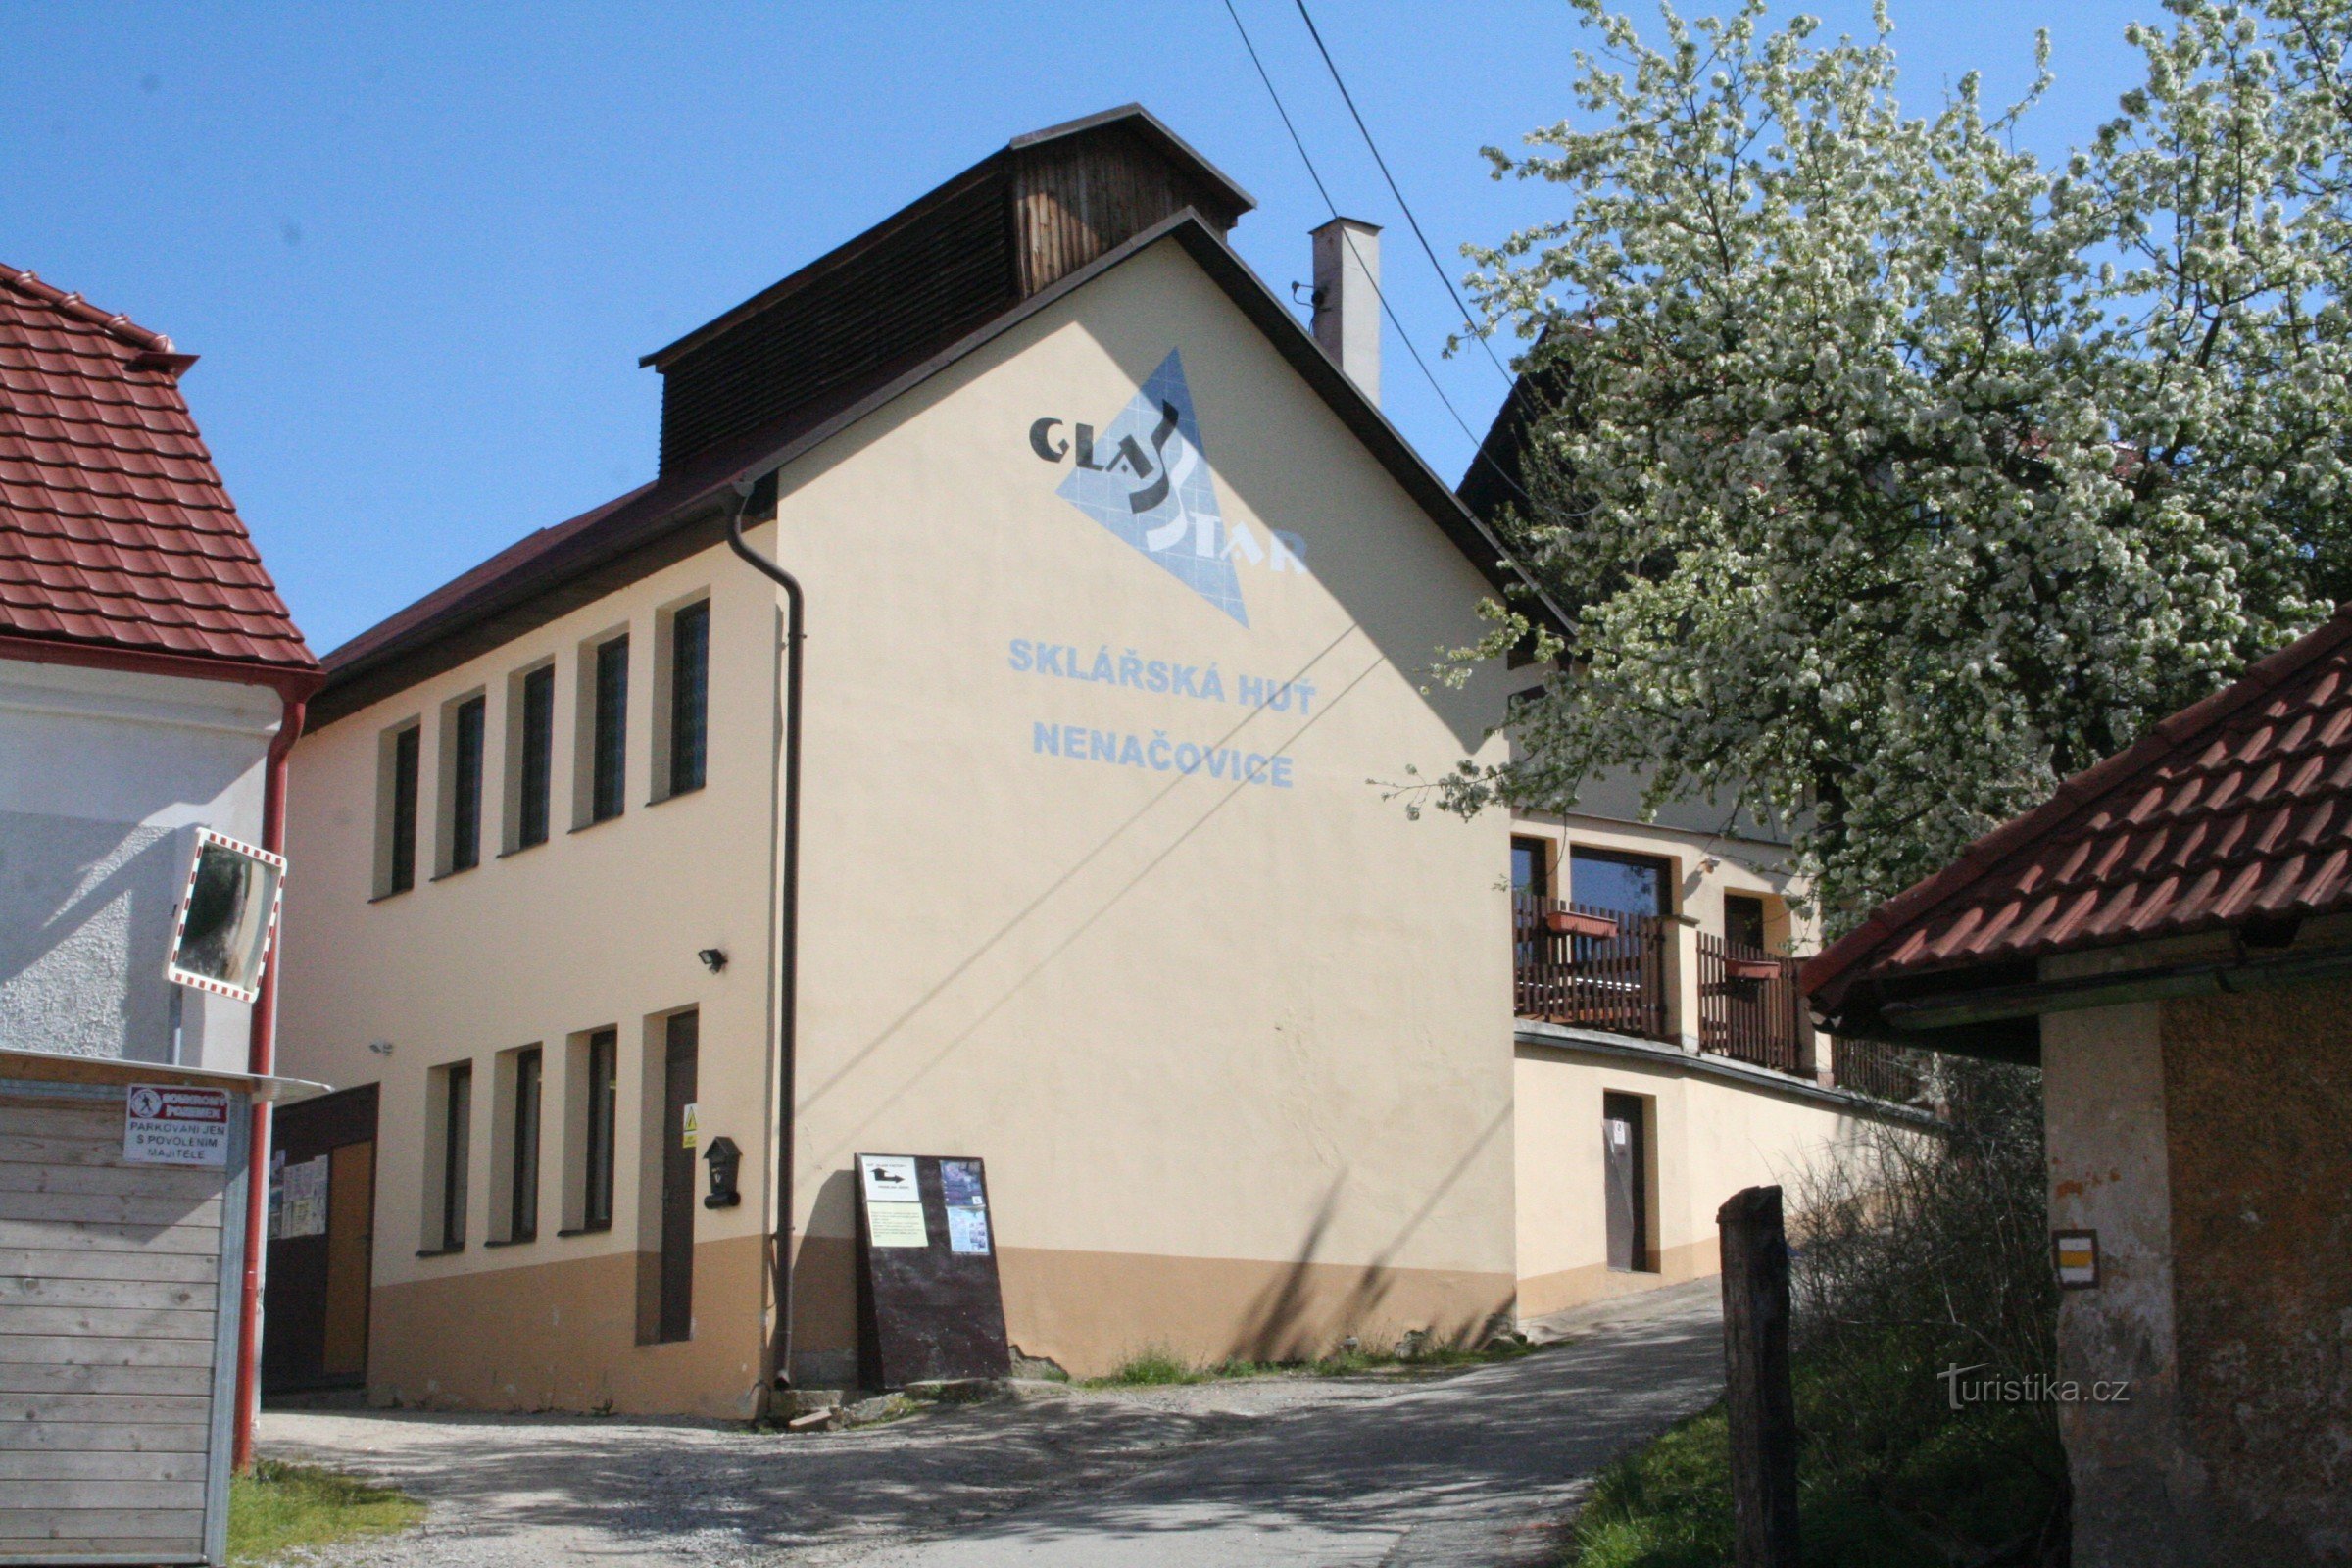 Nenačovice glasfabriek